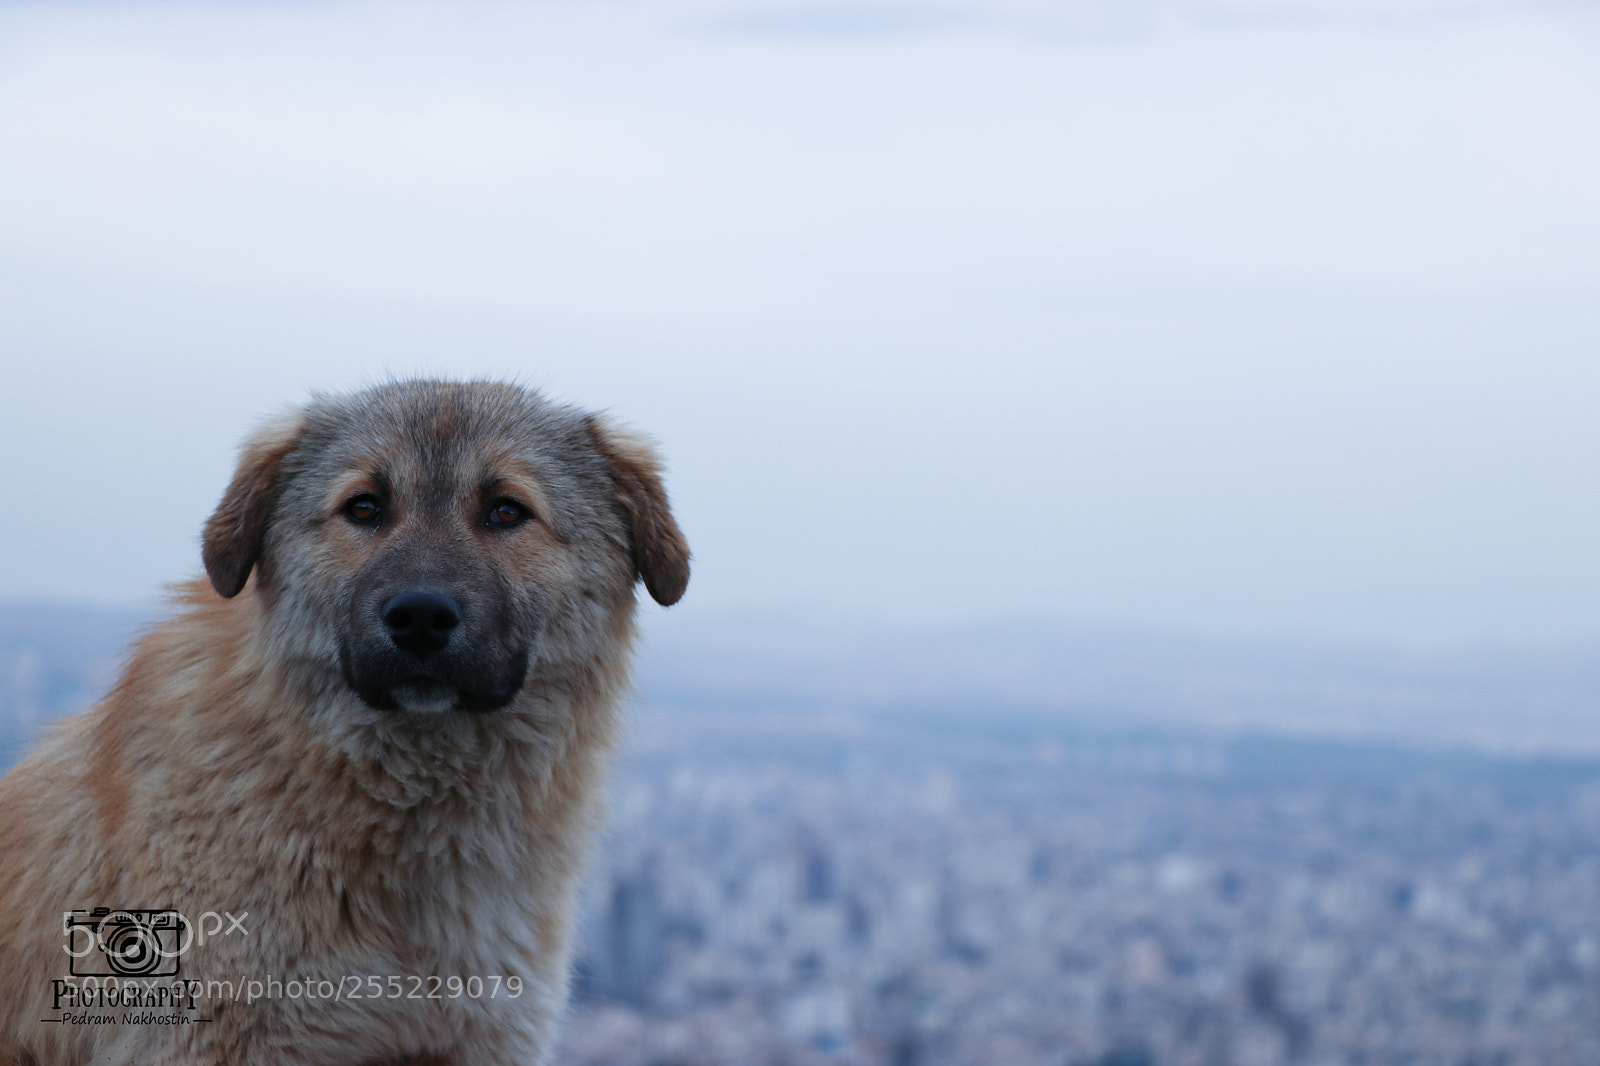 Canon EOS 80D sample photo. Dog photography